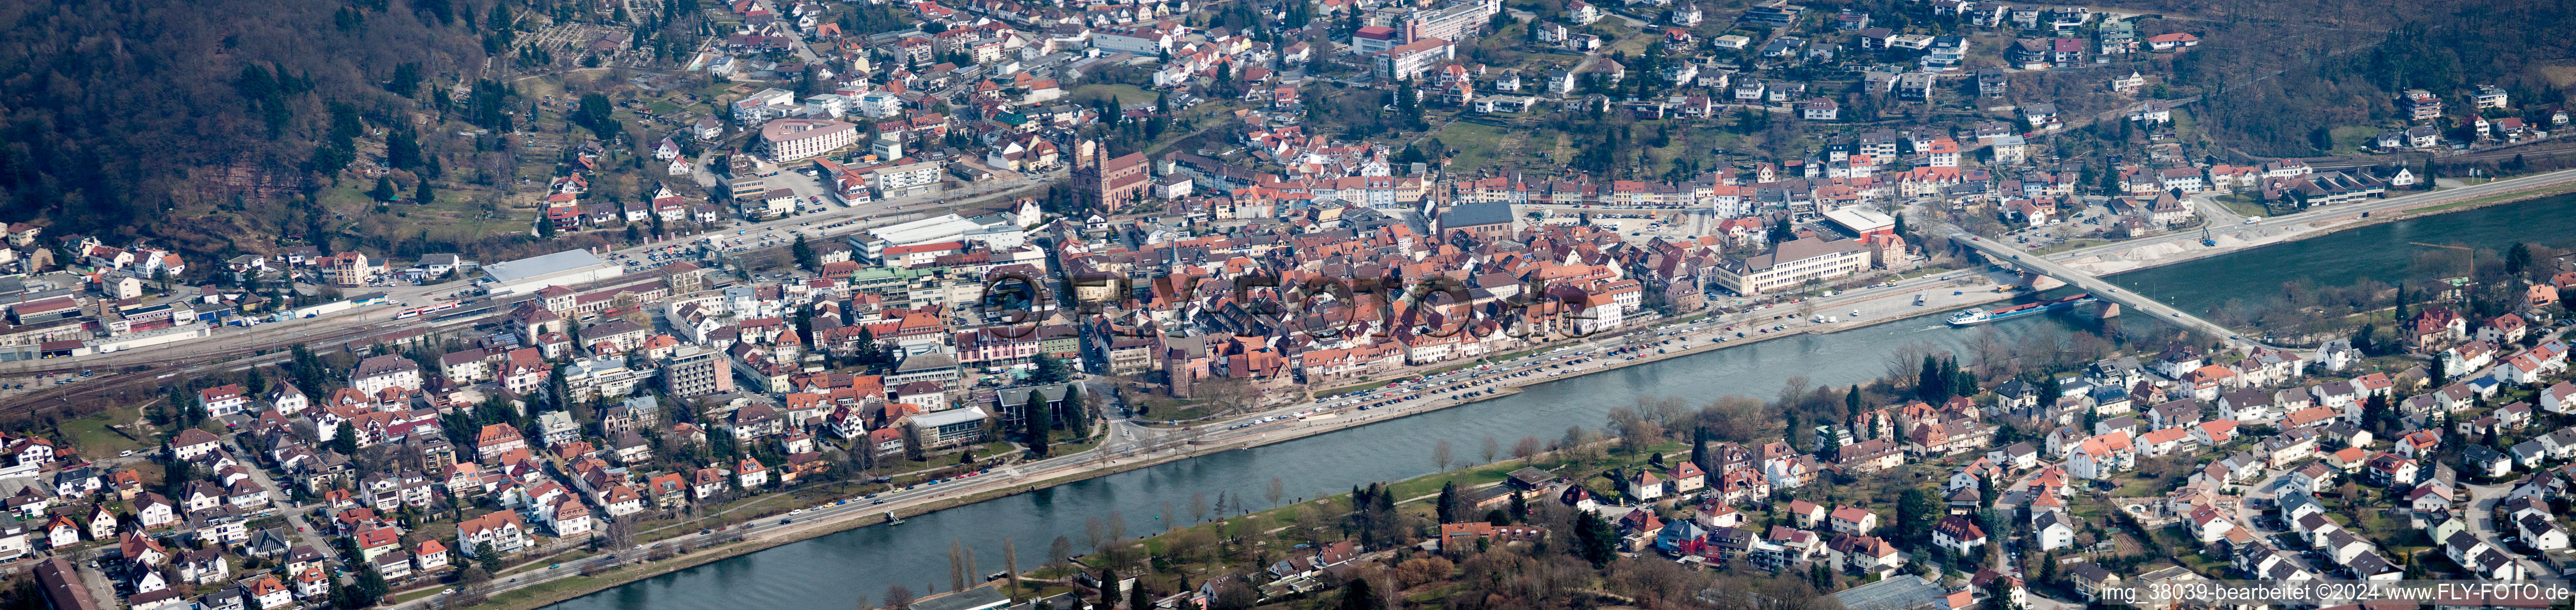 Vue aérienne de Perspective panoramique de la zone riveraine du fleuve Neckar à Eberbach dans le département Bade-Wurtemberg, Allemagne